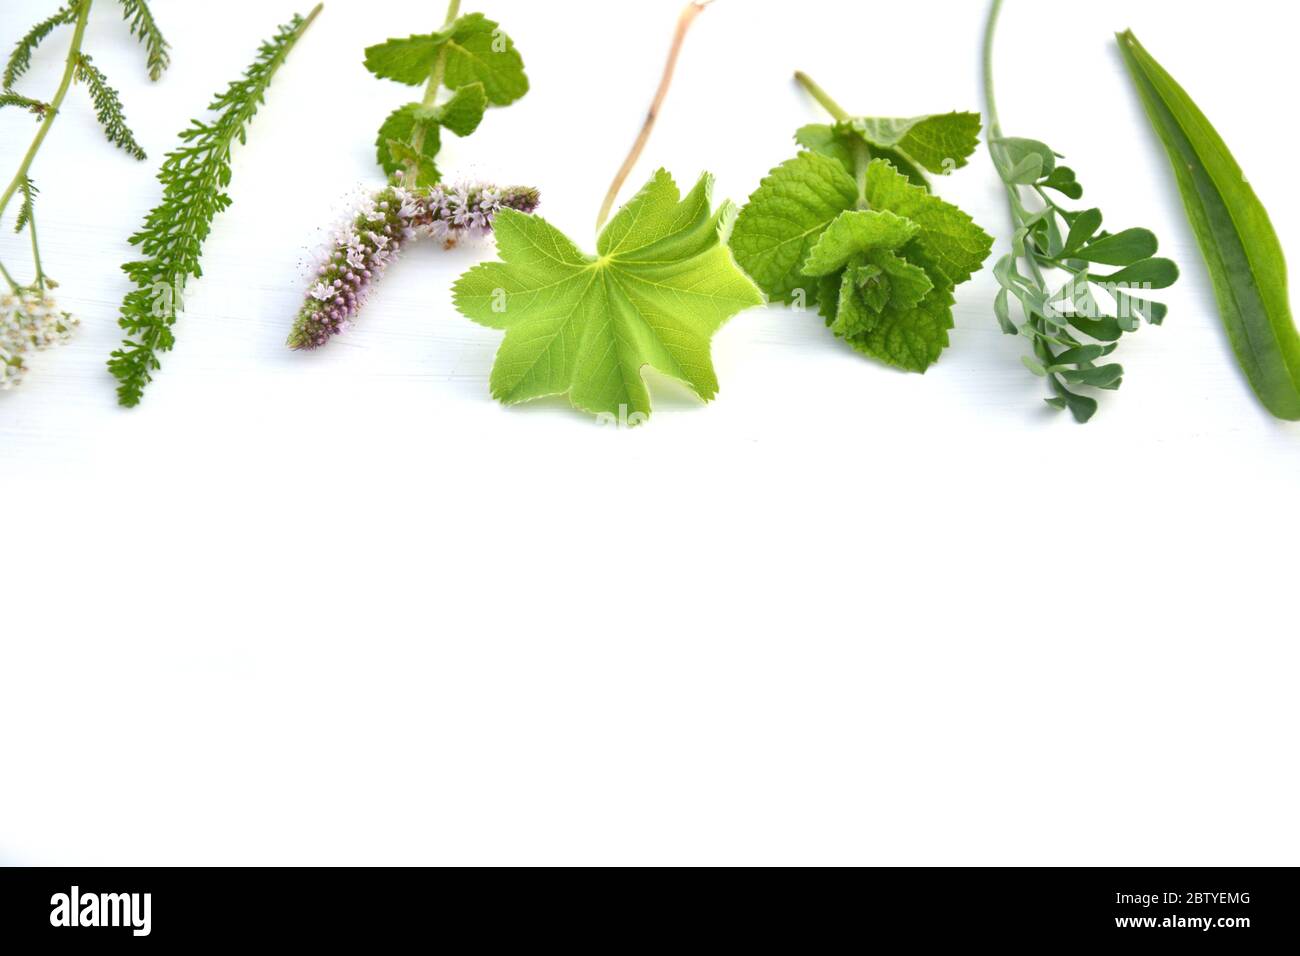 Fresh herbs on white background Stock Photo